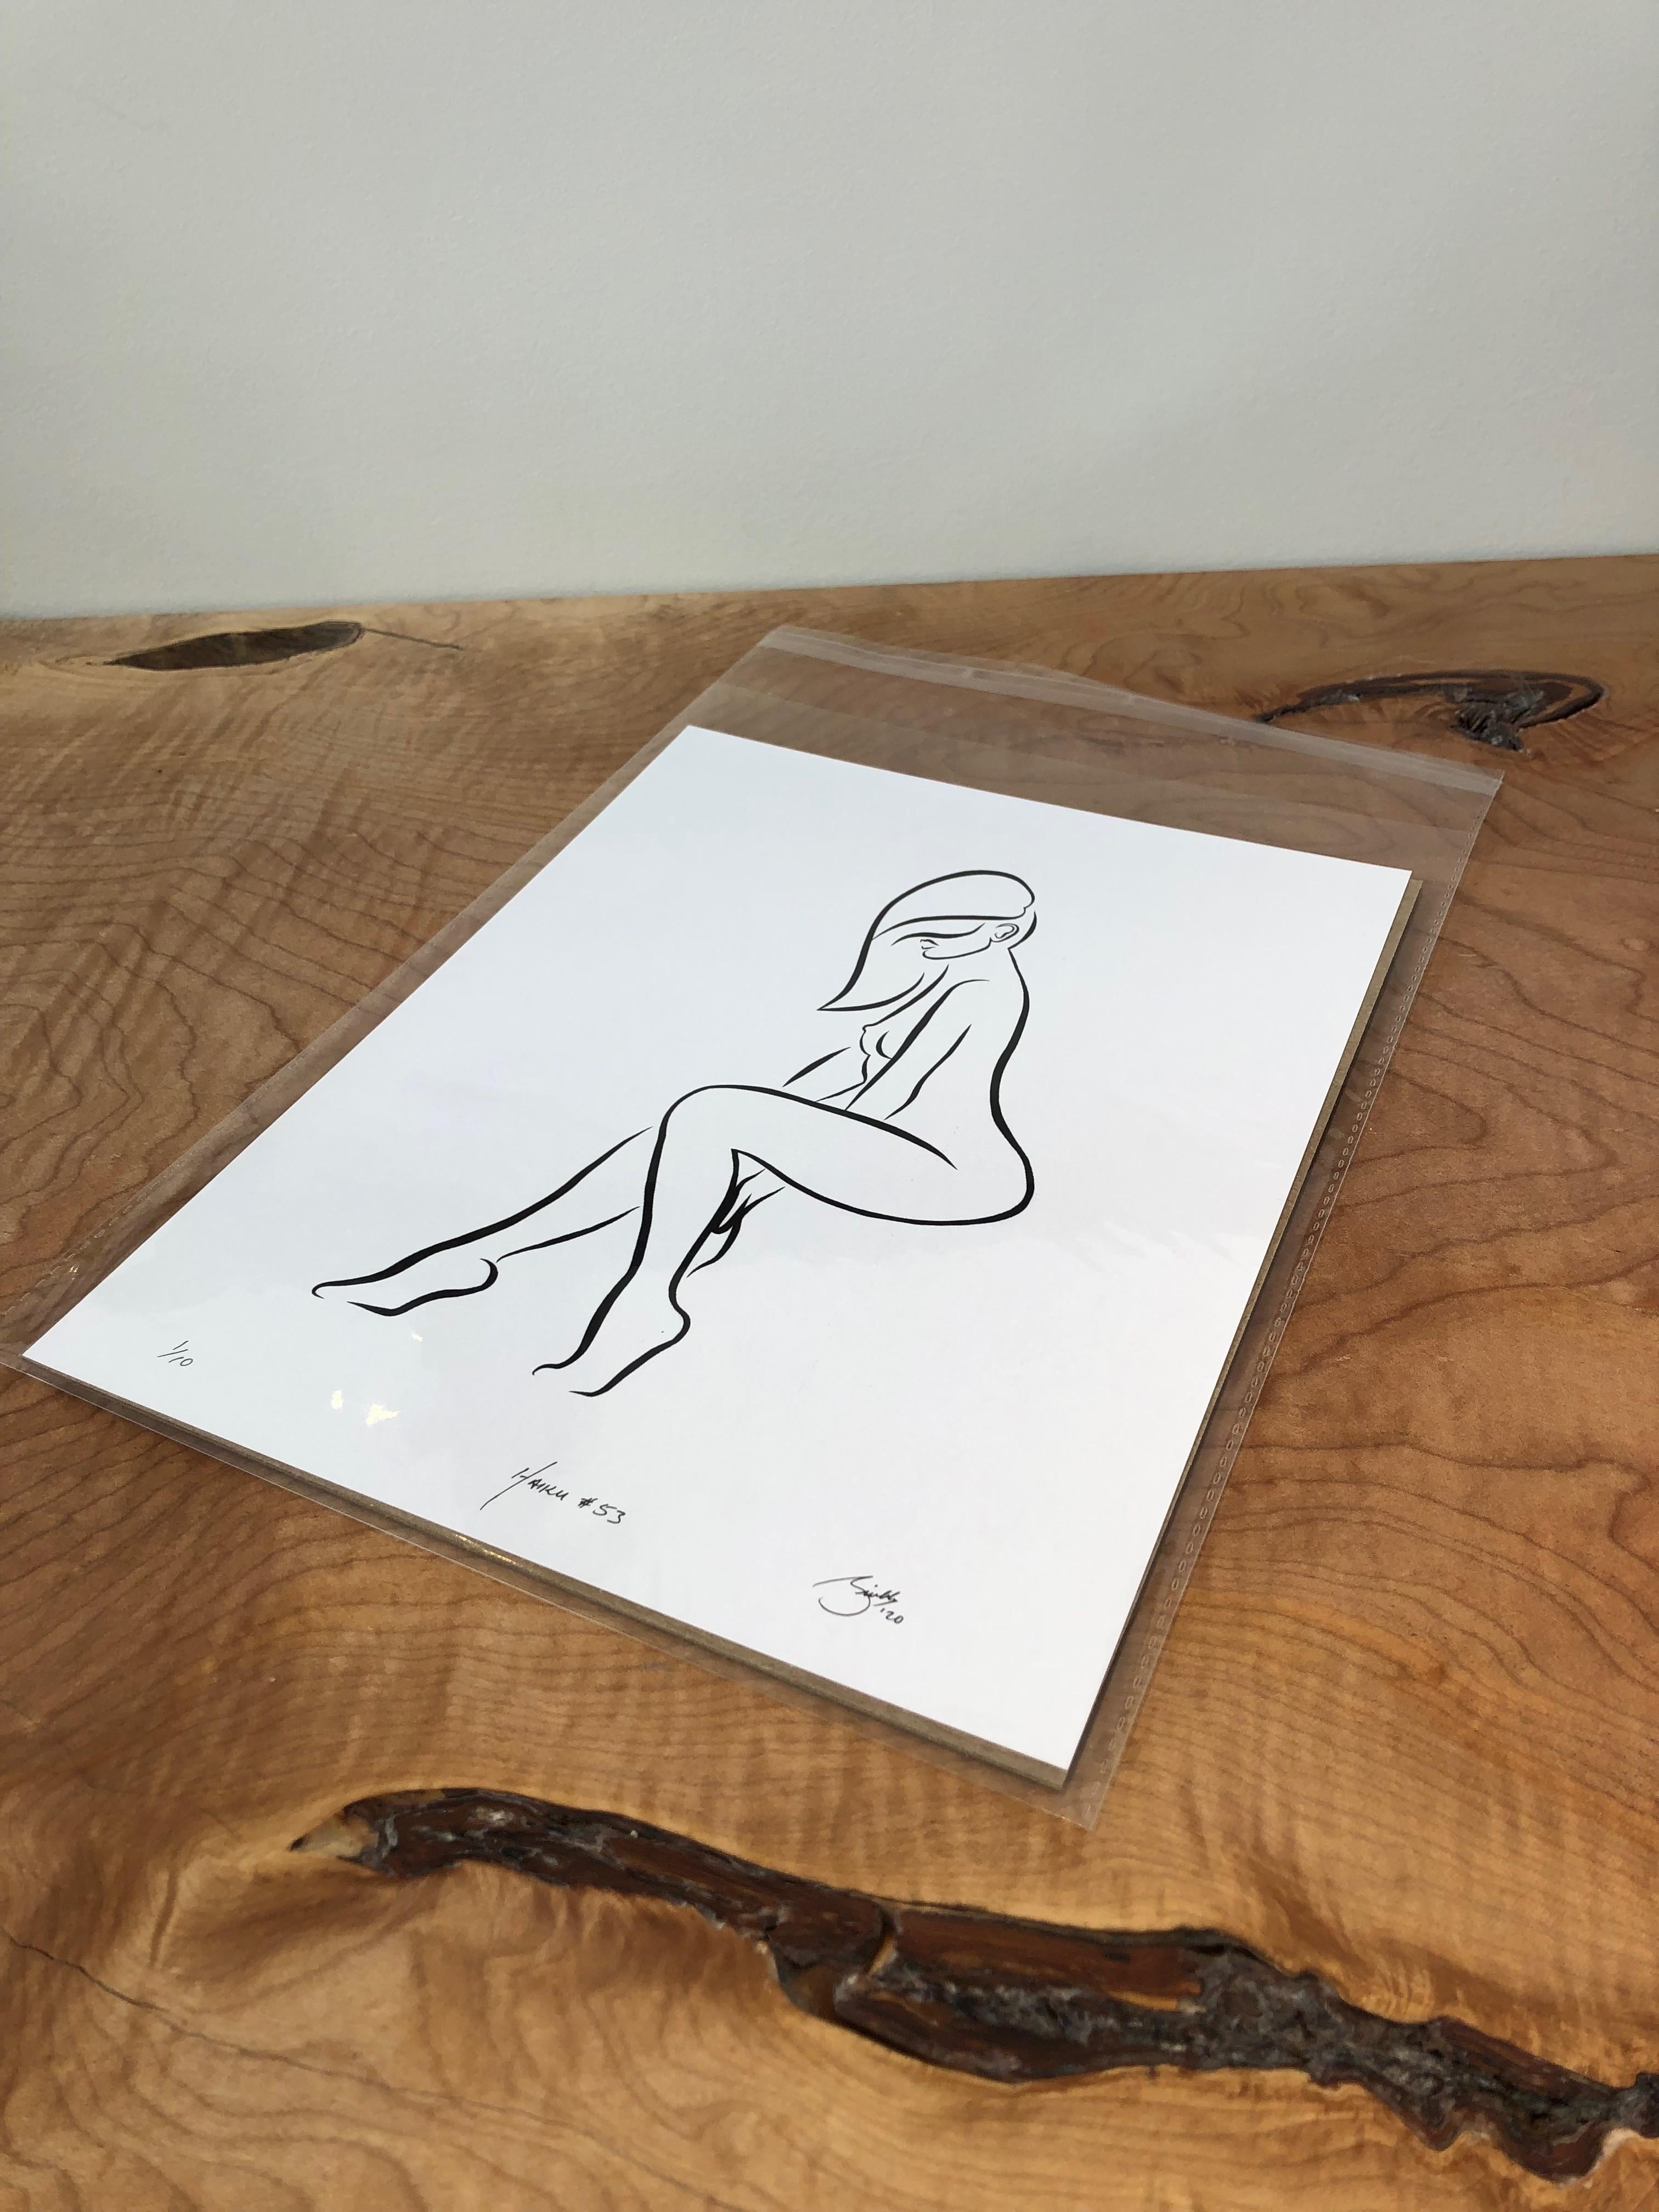 Haiku #53, 1/50 - Digital Vector Drawing Female Nude Woman Figure Tossed Hair - Print by Michael Binkley